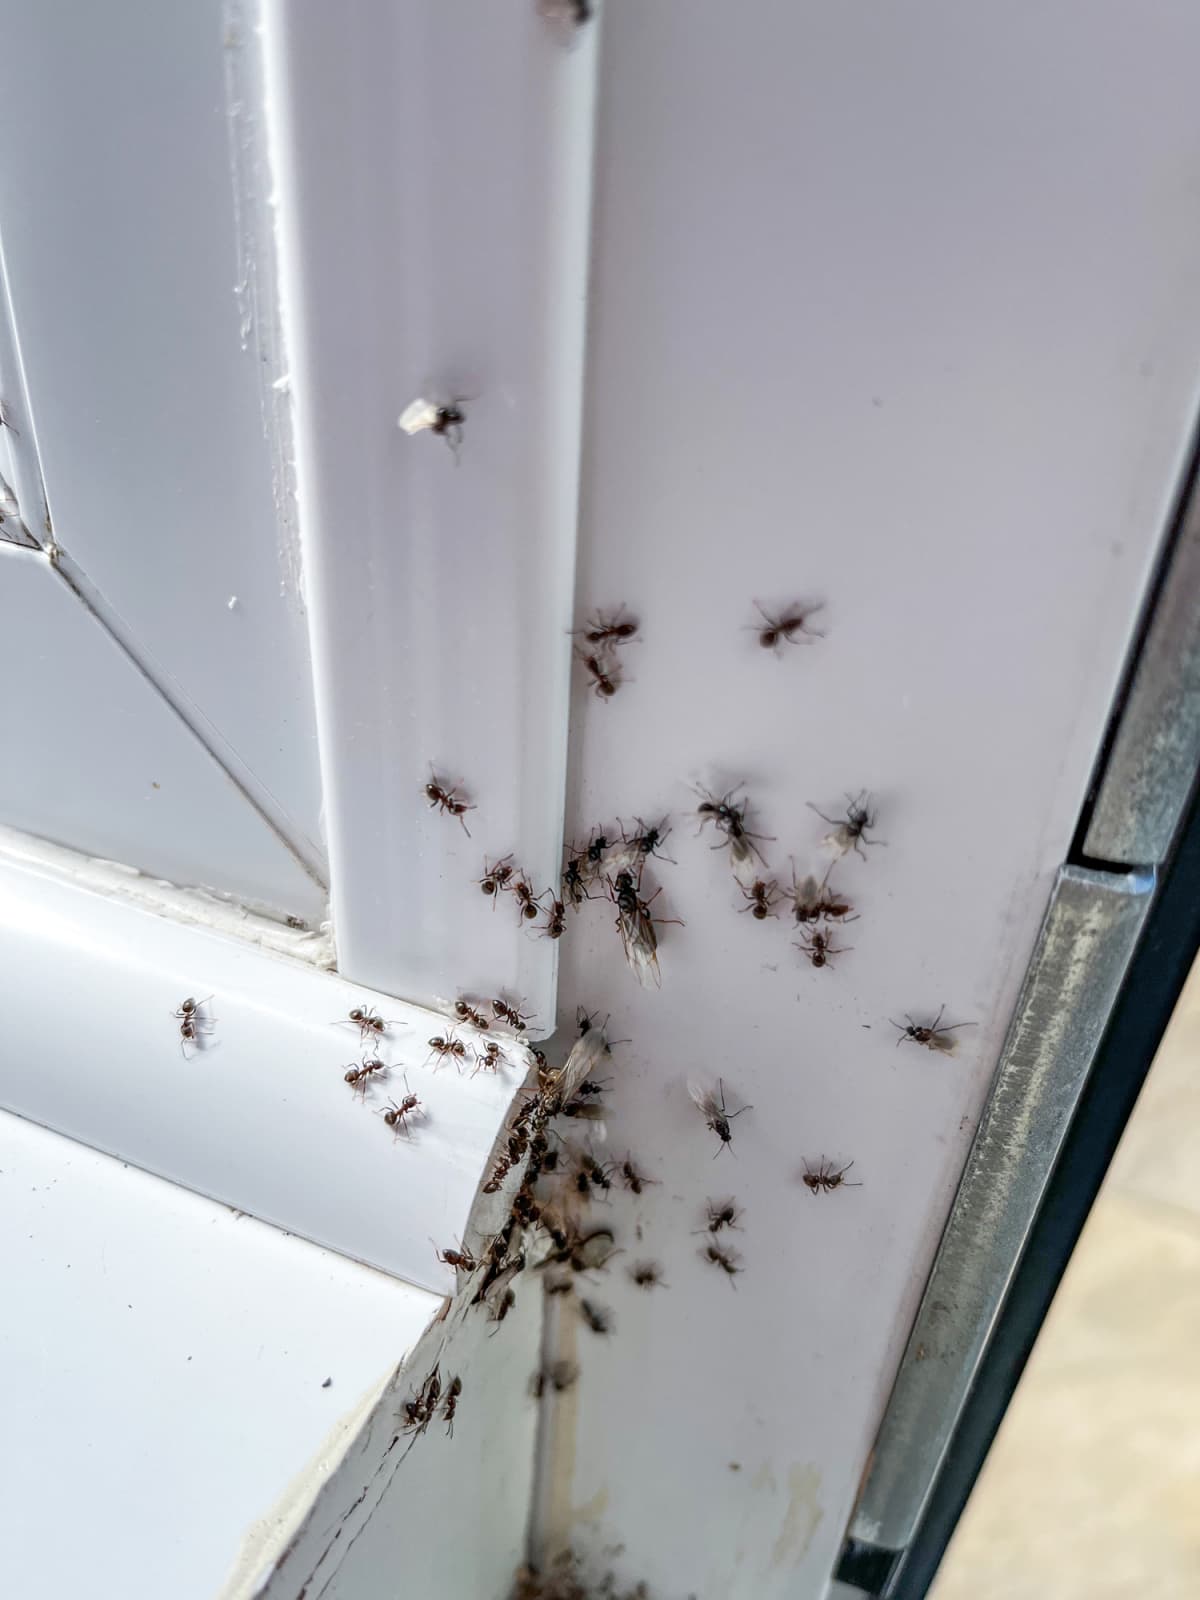 ants on windowsill